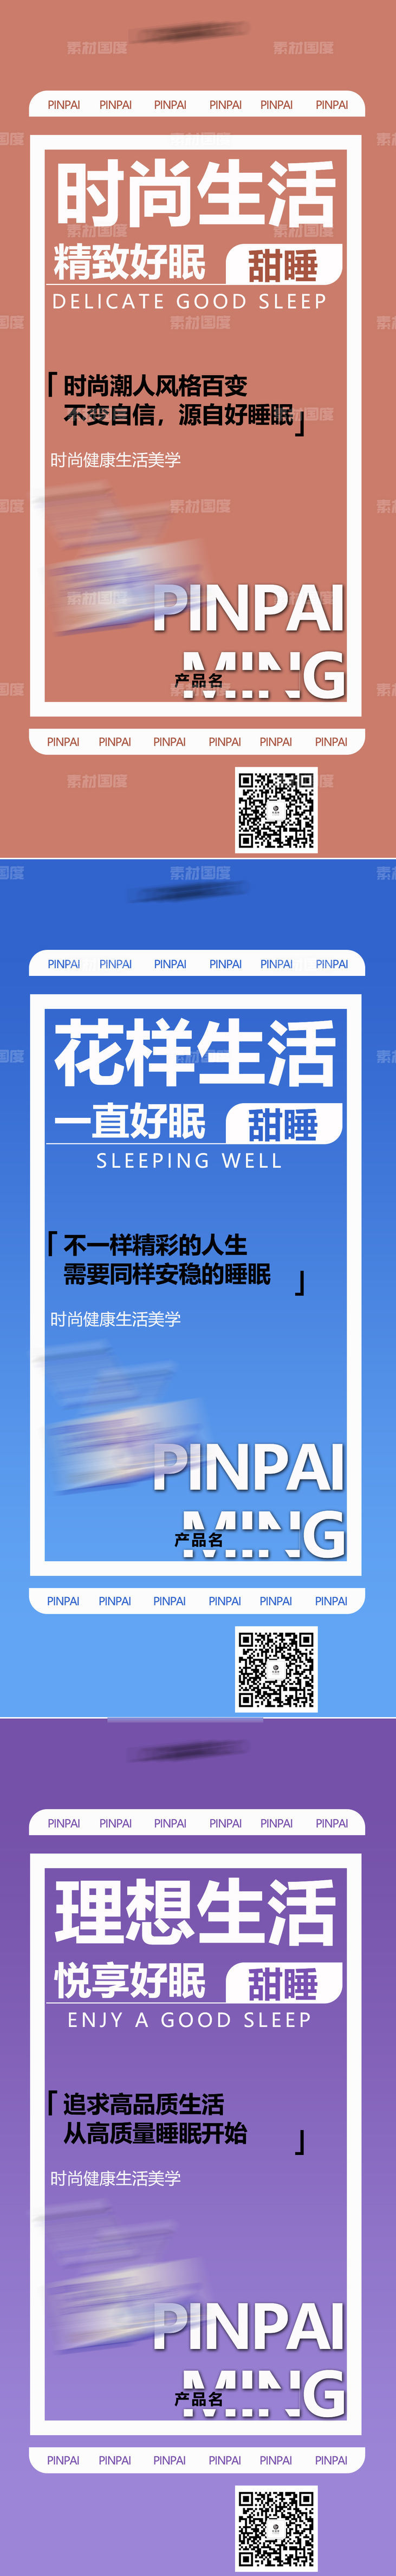 睡眠失眠保健养生产品海报